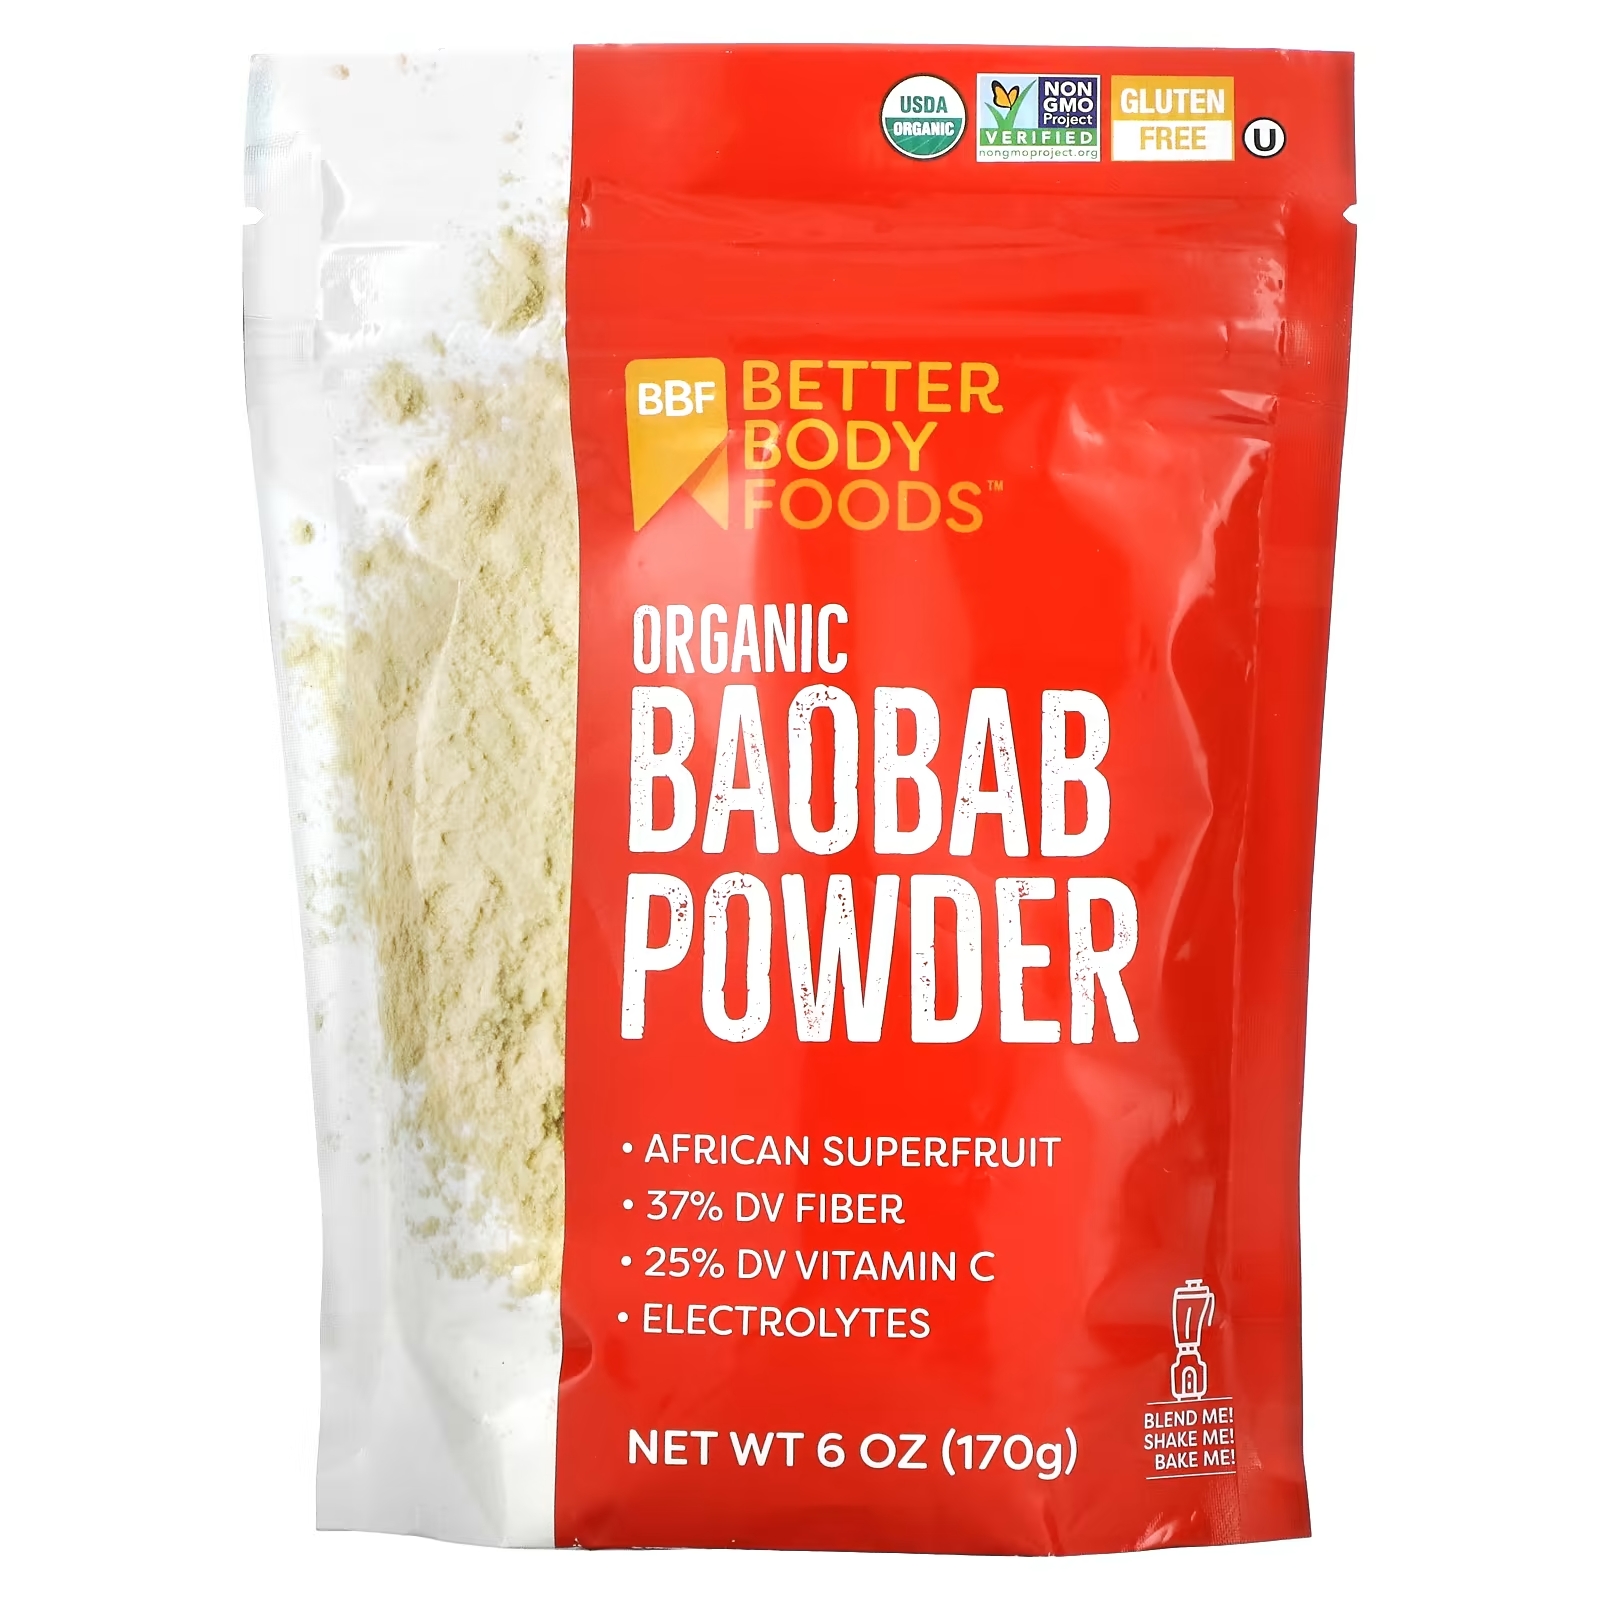 Органический Порошок Баобаба BetterBody Foods, 170 г betterbody foods органический порошок баобаба 170 г 6 унций